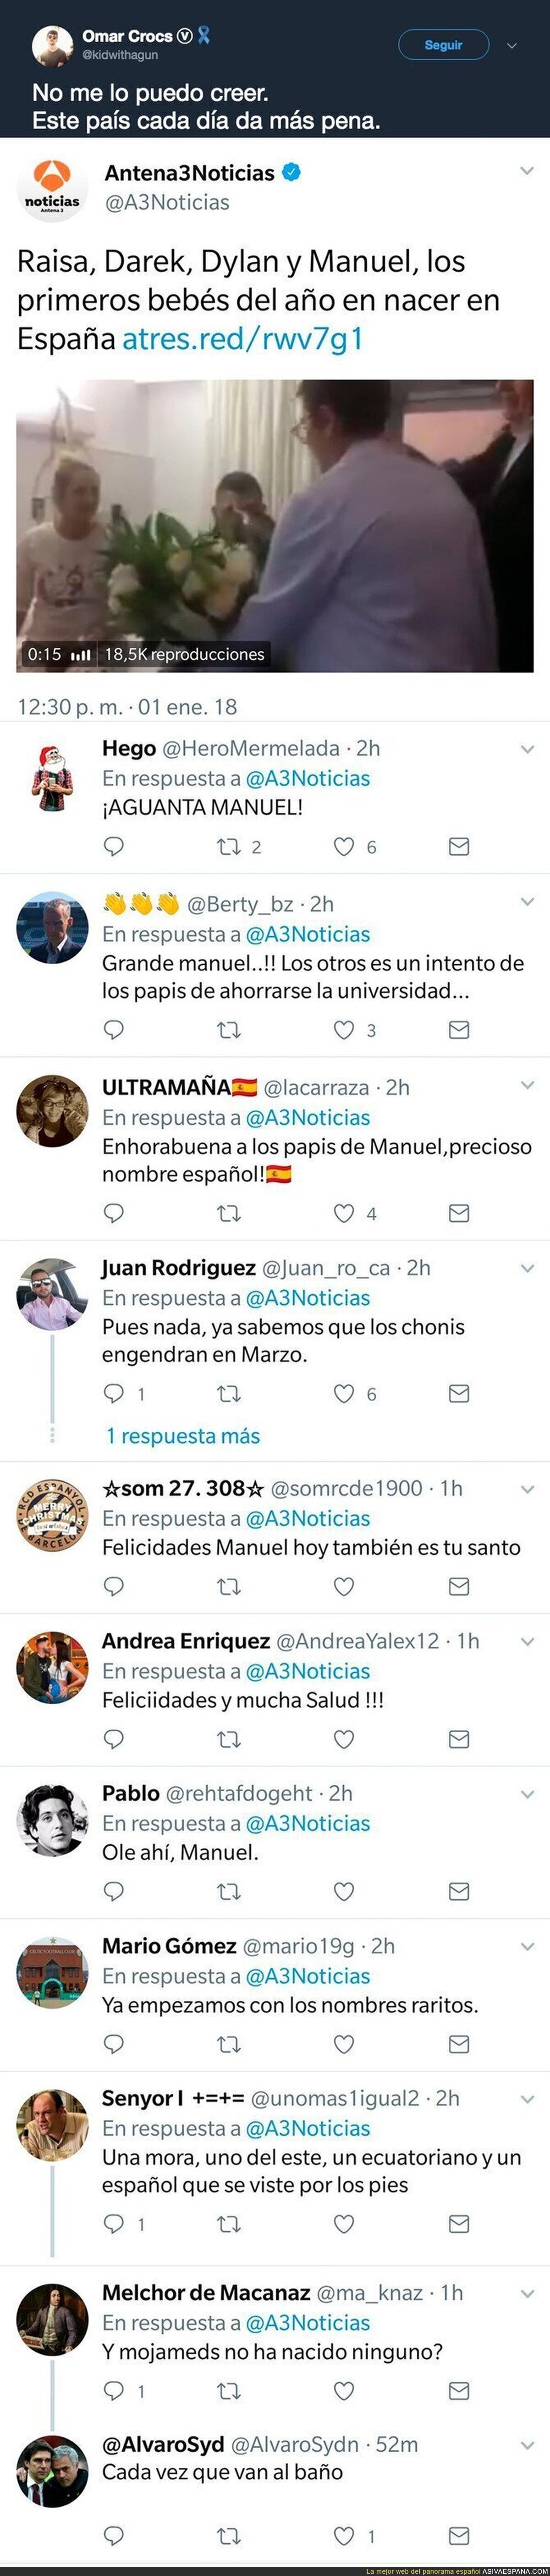 Antena 3 da a conocer el nombre del primer bebé nacido en España en 2018 y sus televidentes sacan su lado más racista con estos comentarios